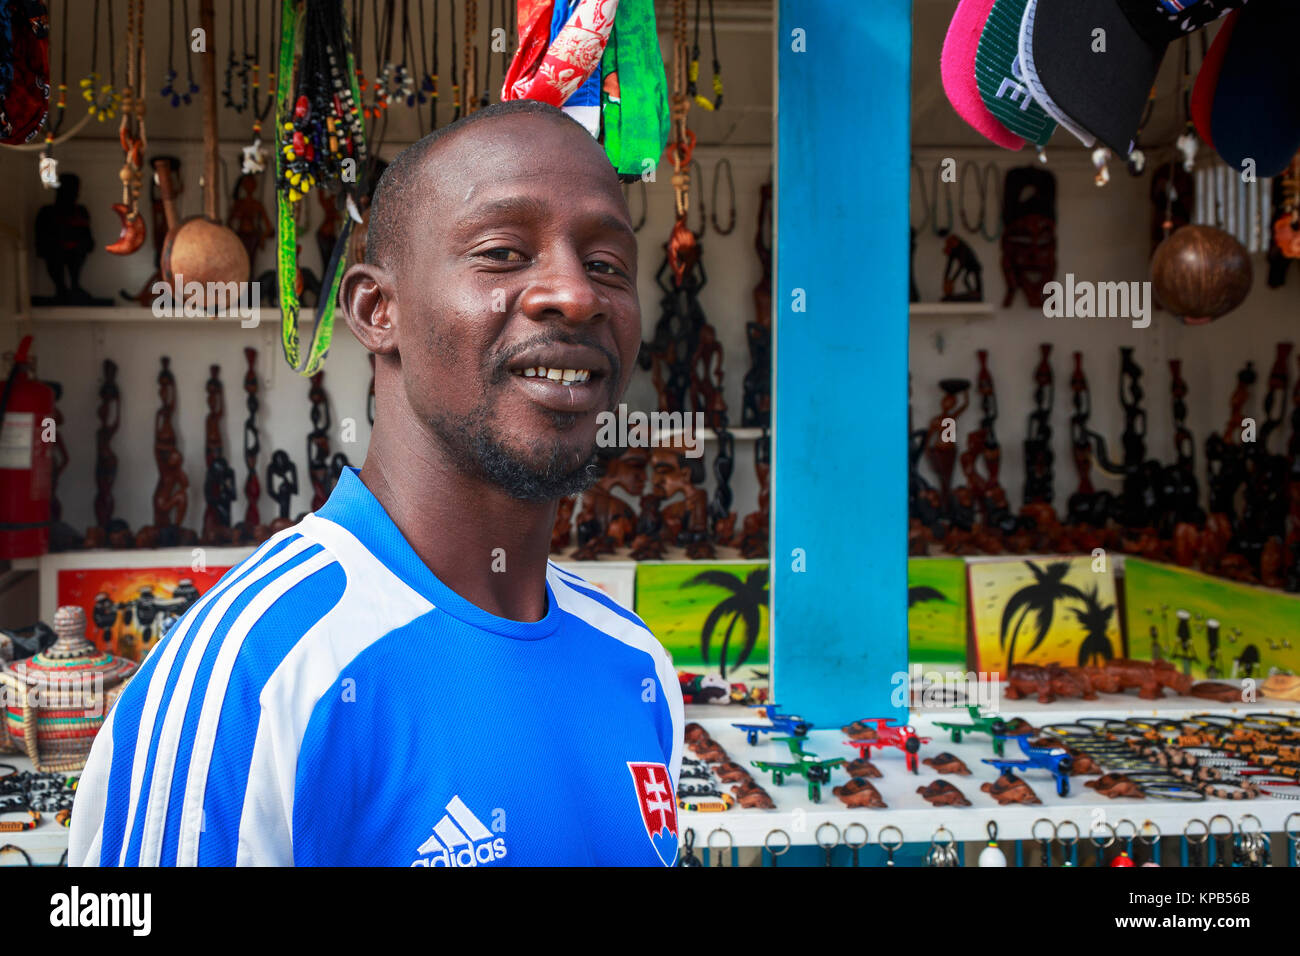 Uomo locali vendono souvenir per i turisti provenienti da una bancarella di strada, Santa Maria, Isola di Sal, Salina, Capo Verde, Africa Foto Stock